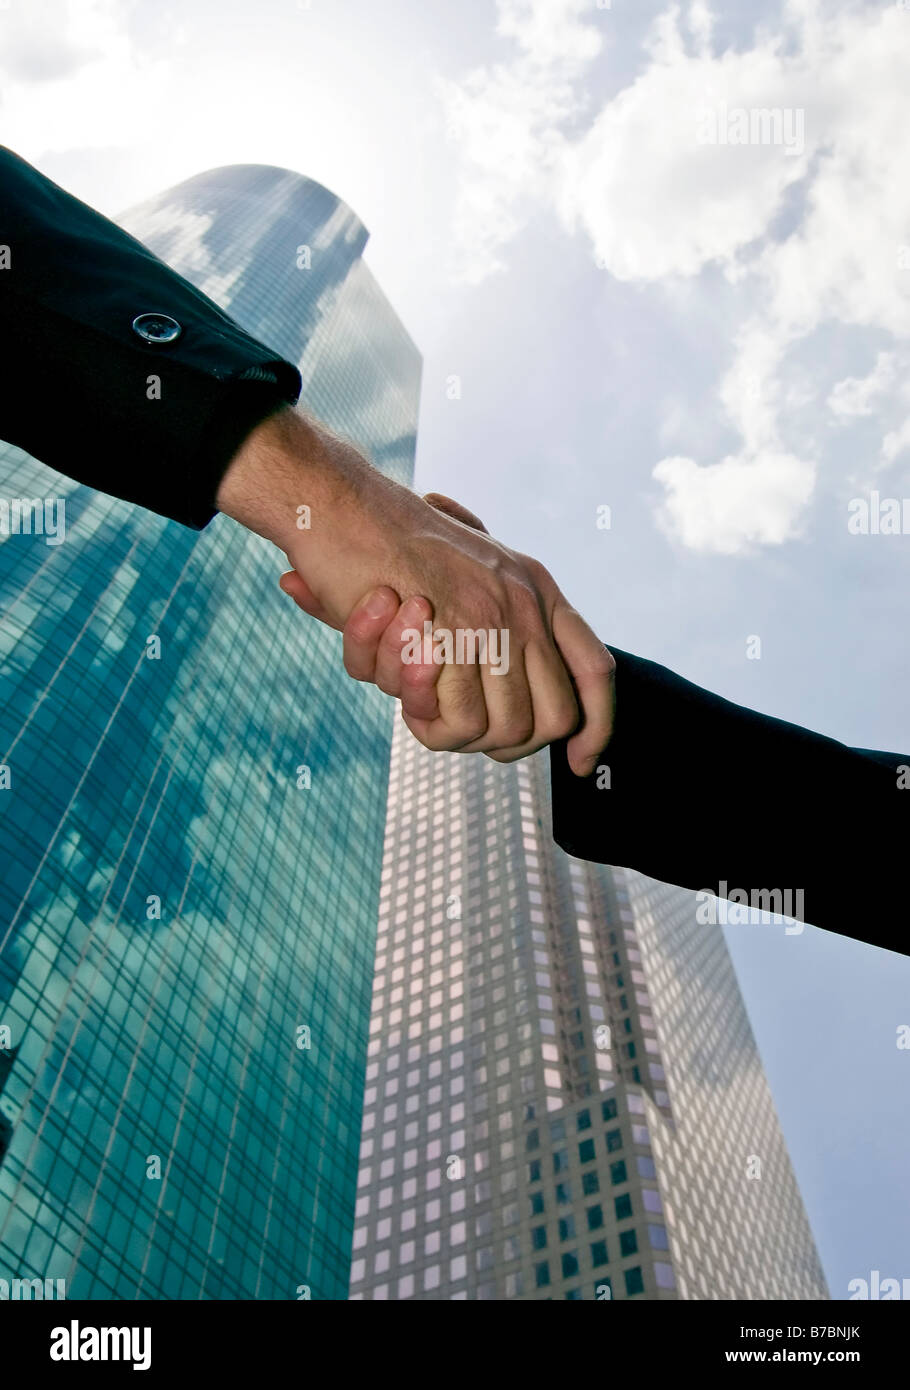 Ein Handschlag gegen einen Himmel mit schönen Longdrinkglas Türmen des Handels füllen den Hintergrund Stockfoto